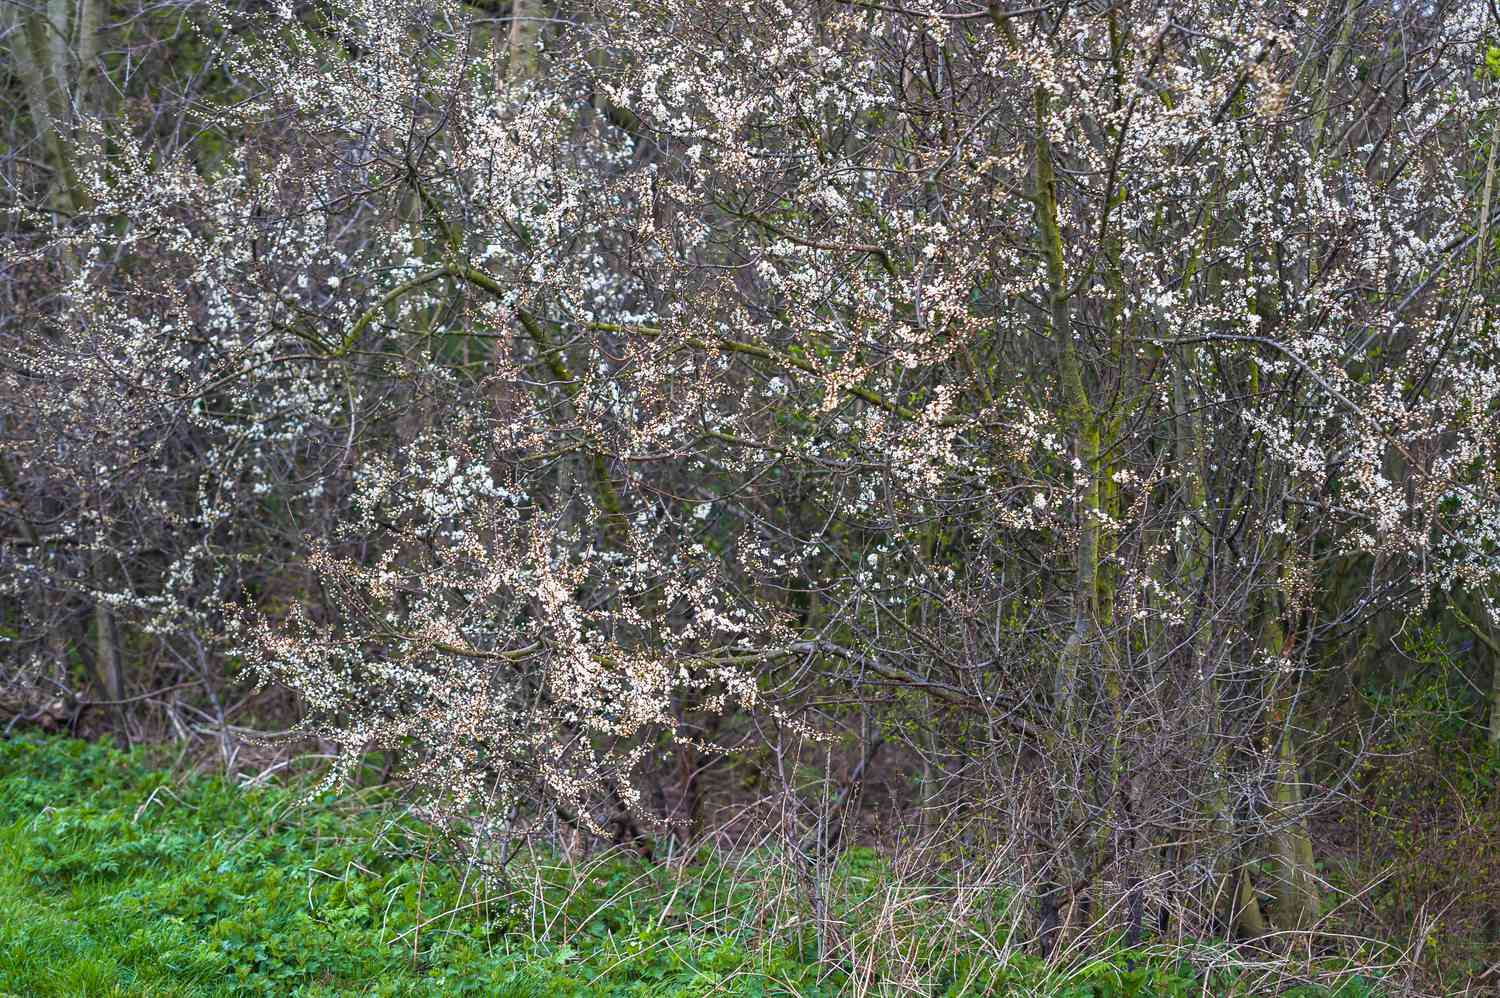 Schlehdornbäume mit dünnen kahlen Ästen und kleinen weißen Blüten